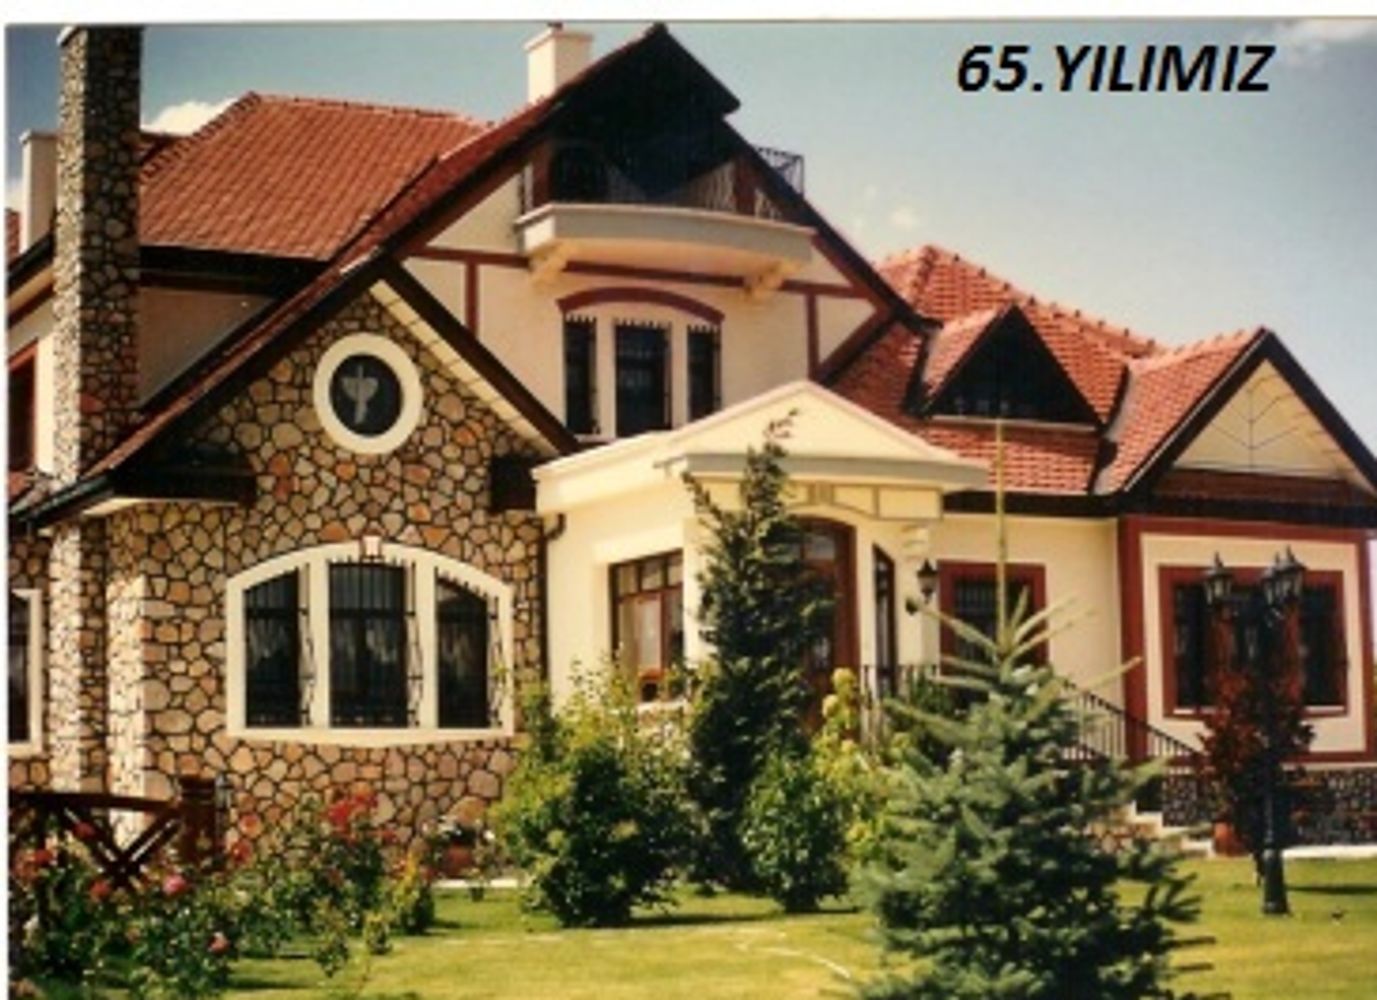 Villa Yapımı - Villa Yapımı, çelik Ev Yapımı, ücretsiz Villa Planları |  ışıldar inşaat, villa yapımı, villa projeleri